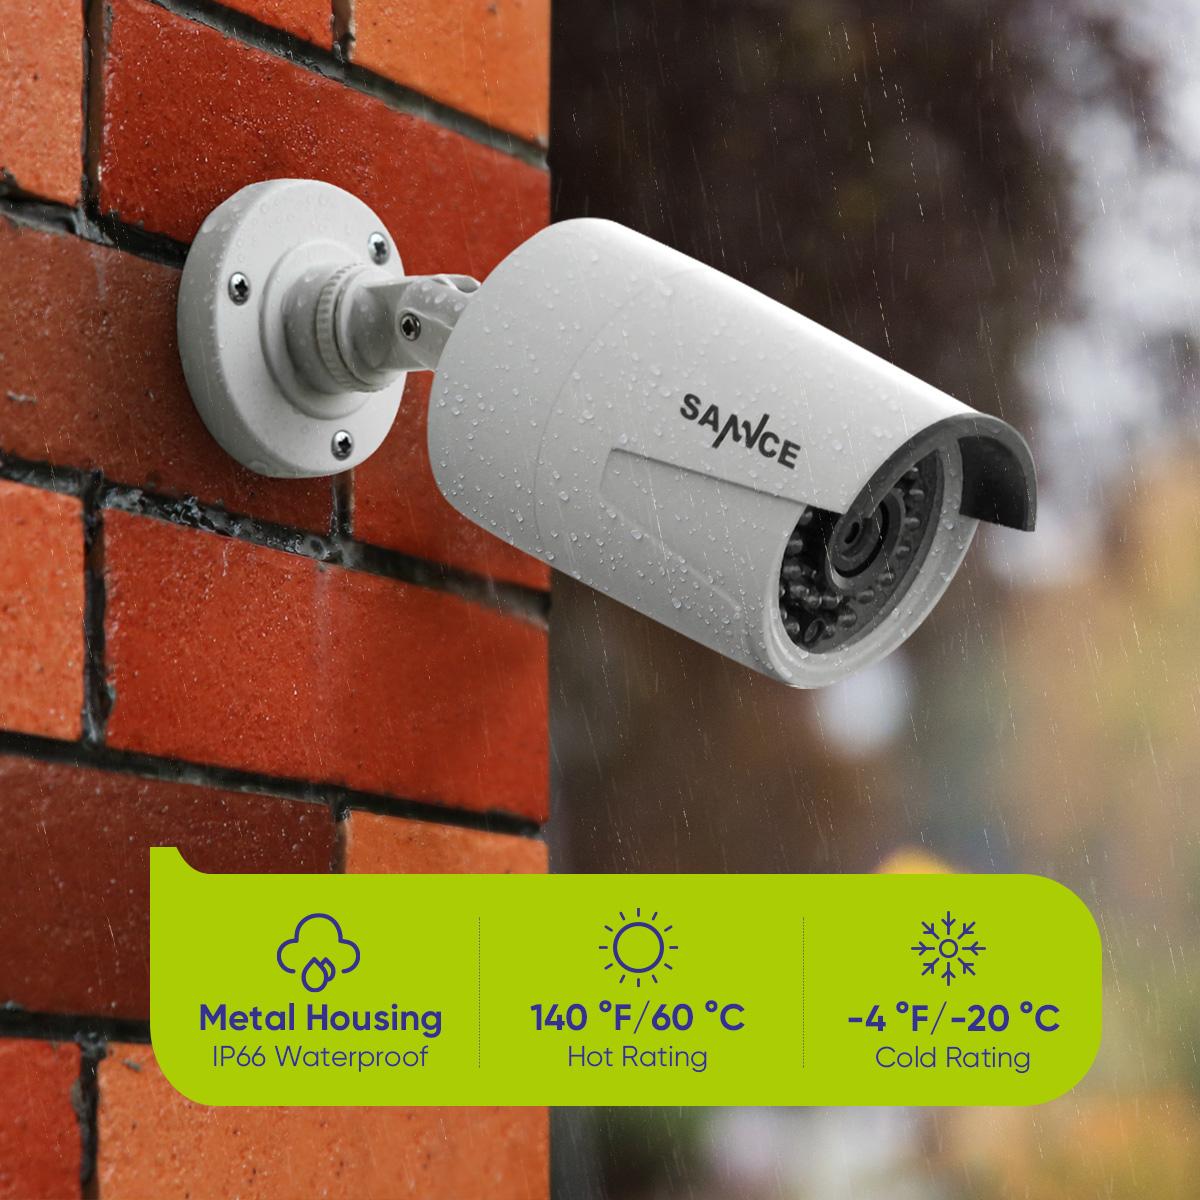 Sannce 8ch 5MP HD Máy ảnh giám sát bảo mật video POE Hệ thống 4PCS 5MP IP camera ngoài trời Weatherproof Home CCTV NVR System Build-In HDD: Không có